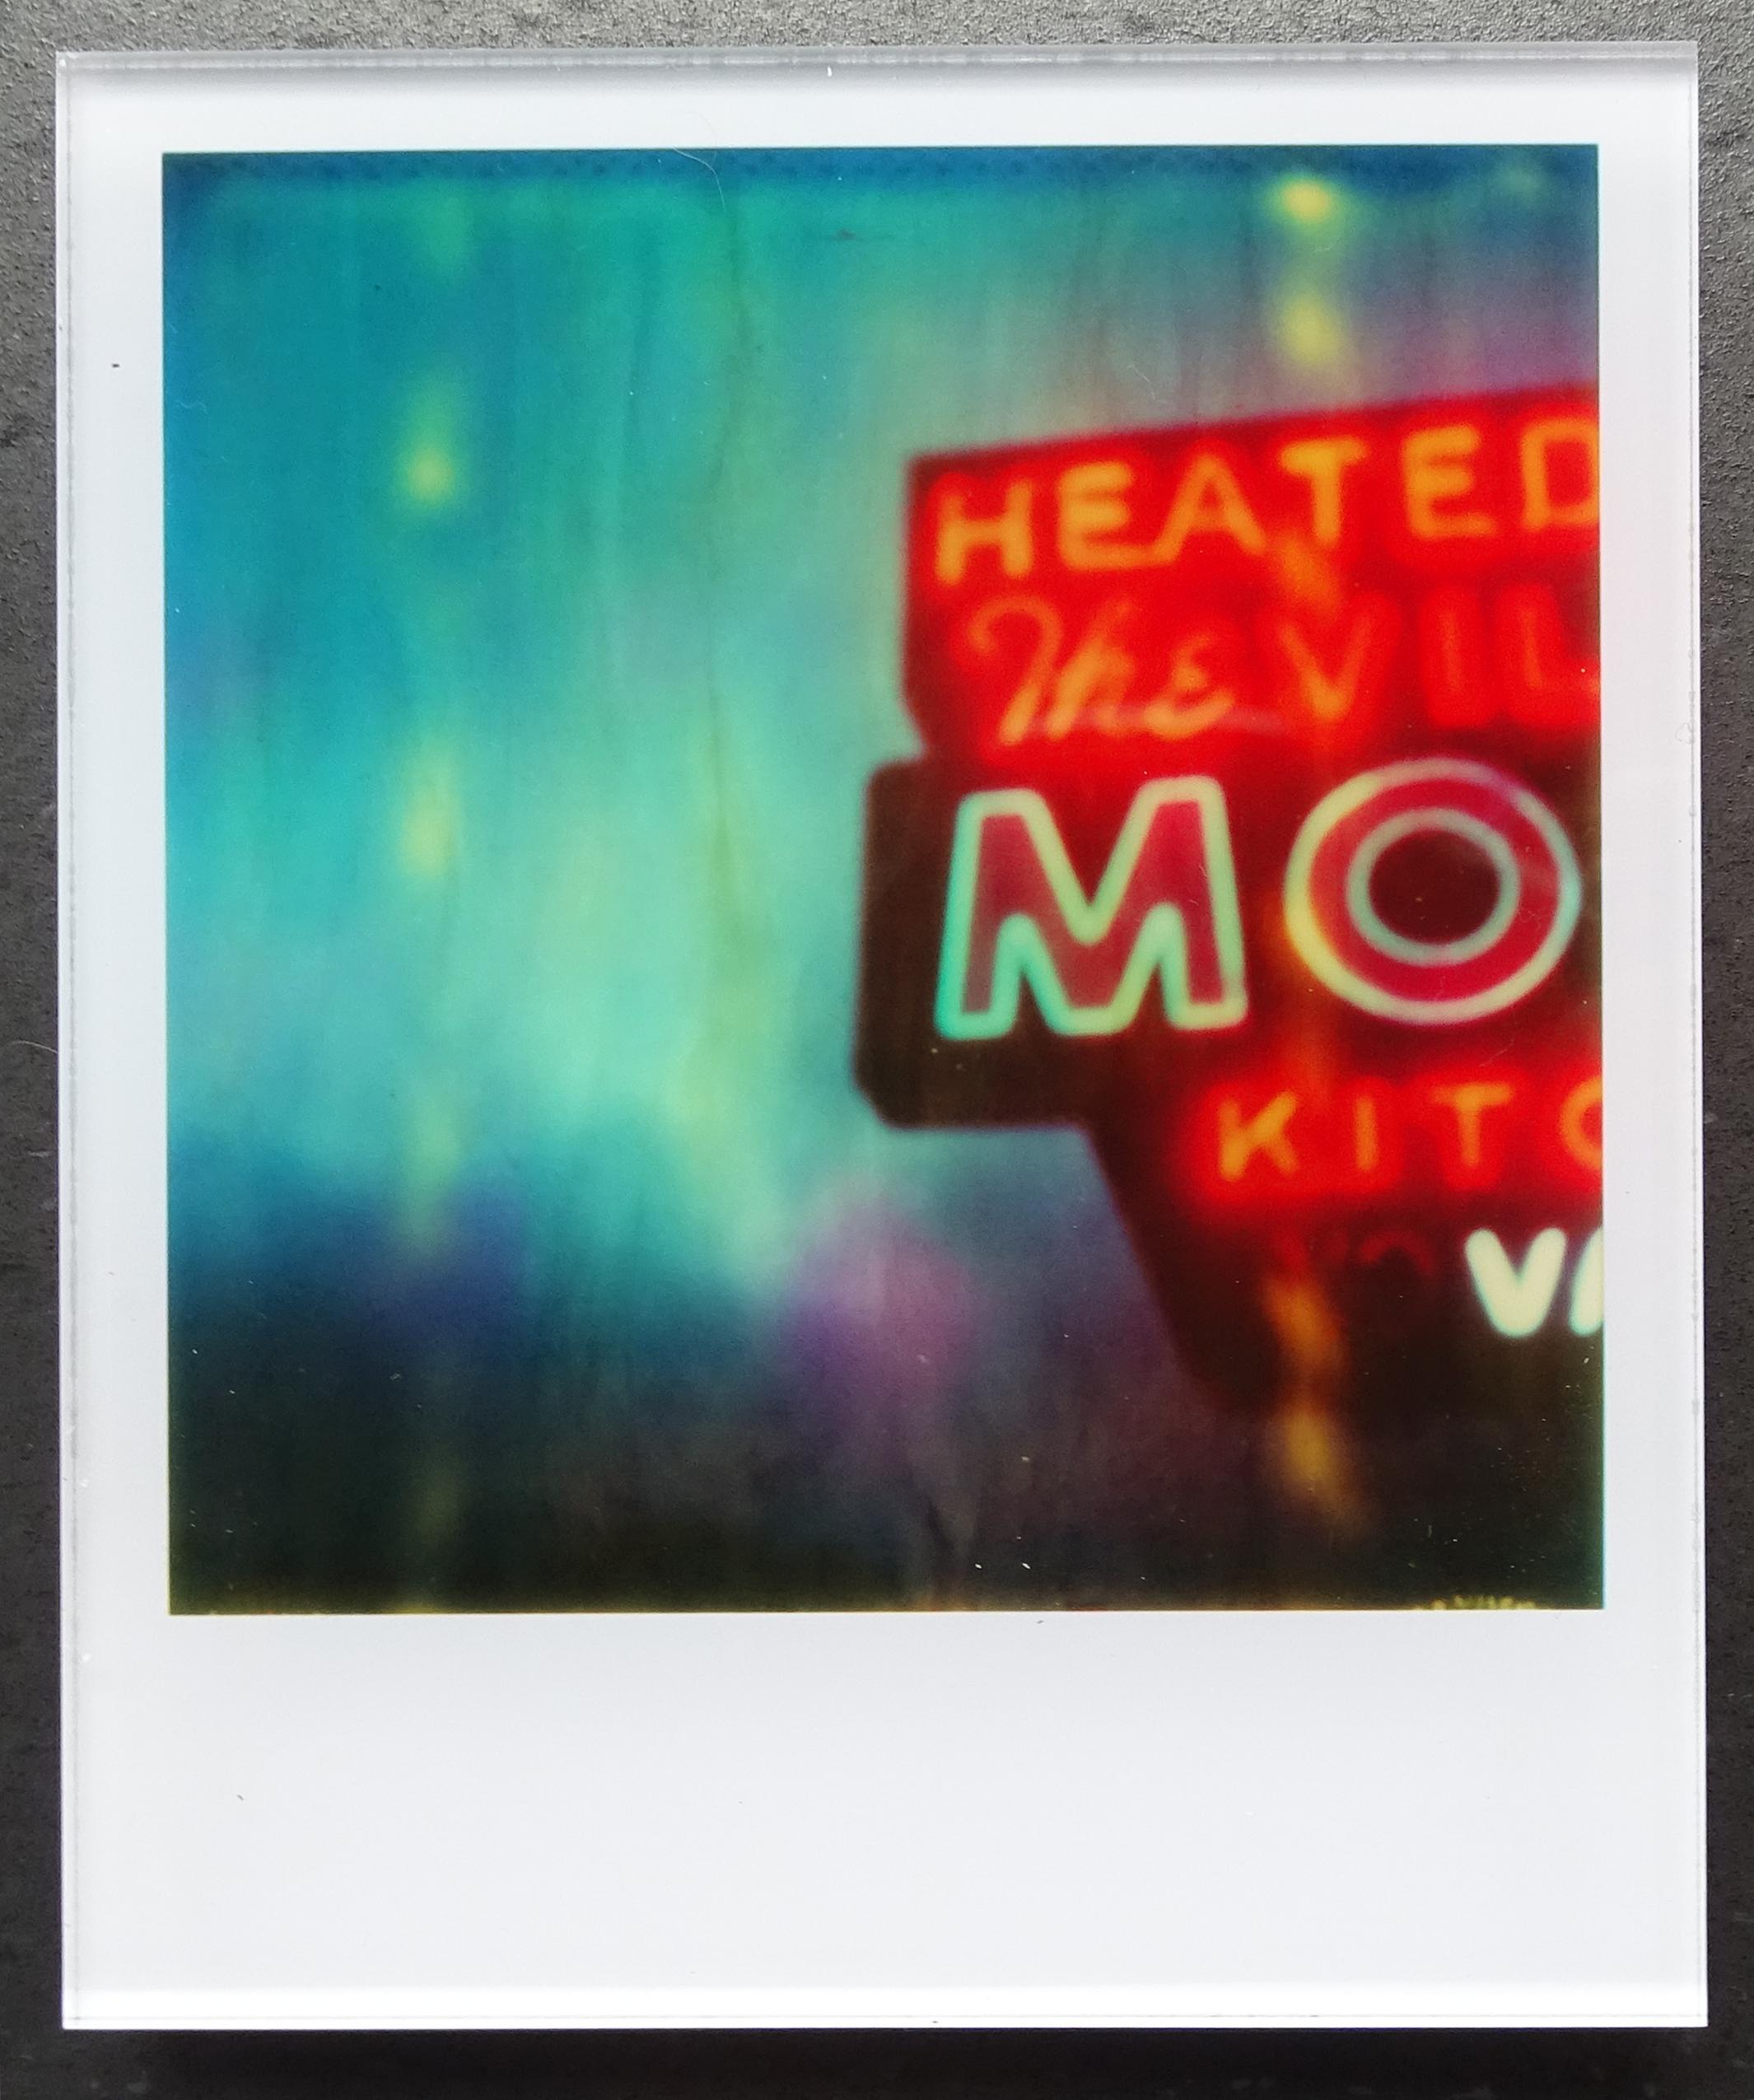 Die Minis von Stefanie Schneider
Village Motel Blue (The last Picture Show), 2009

Verso signiert und Signaturmarke.
Digitale Lambda-Farbfotografien auf der Grundlage eines Polaroids.
Eingeklemmt zwischen Plexiglas (Dicke 0,7 cm)

Offene Editionen